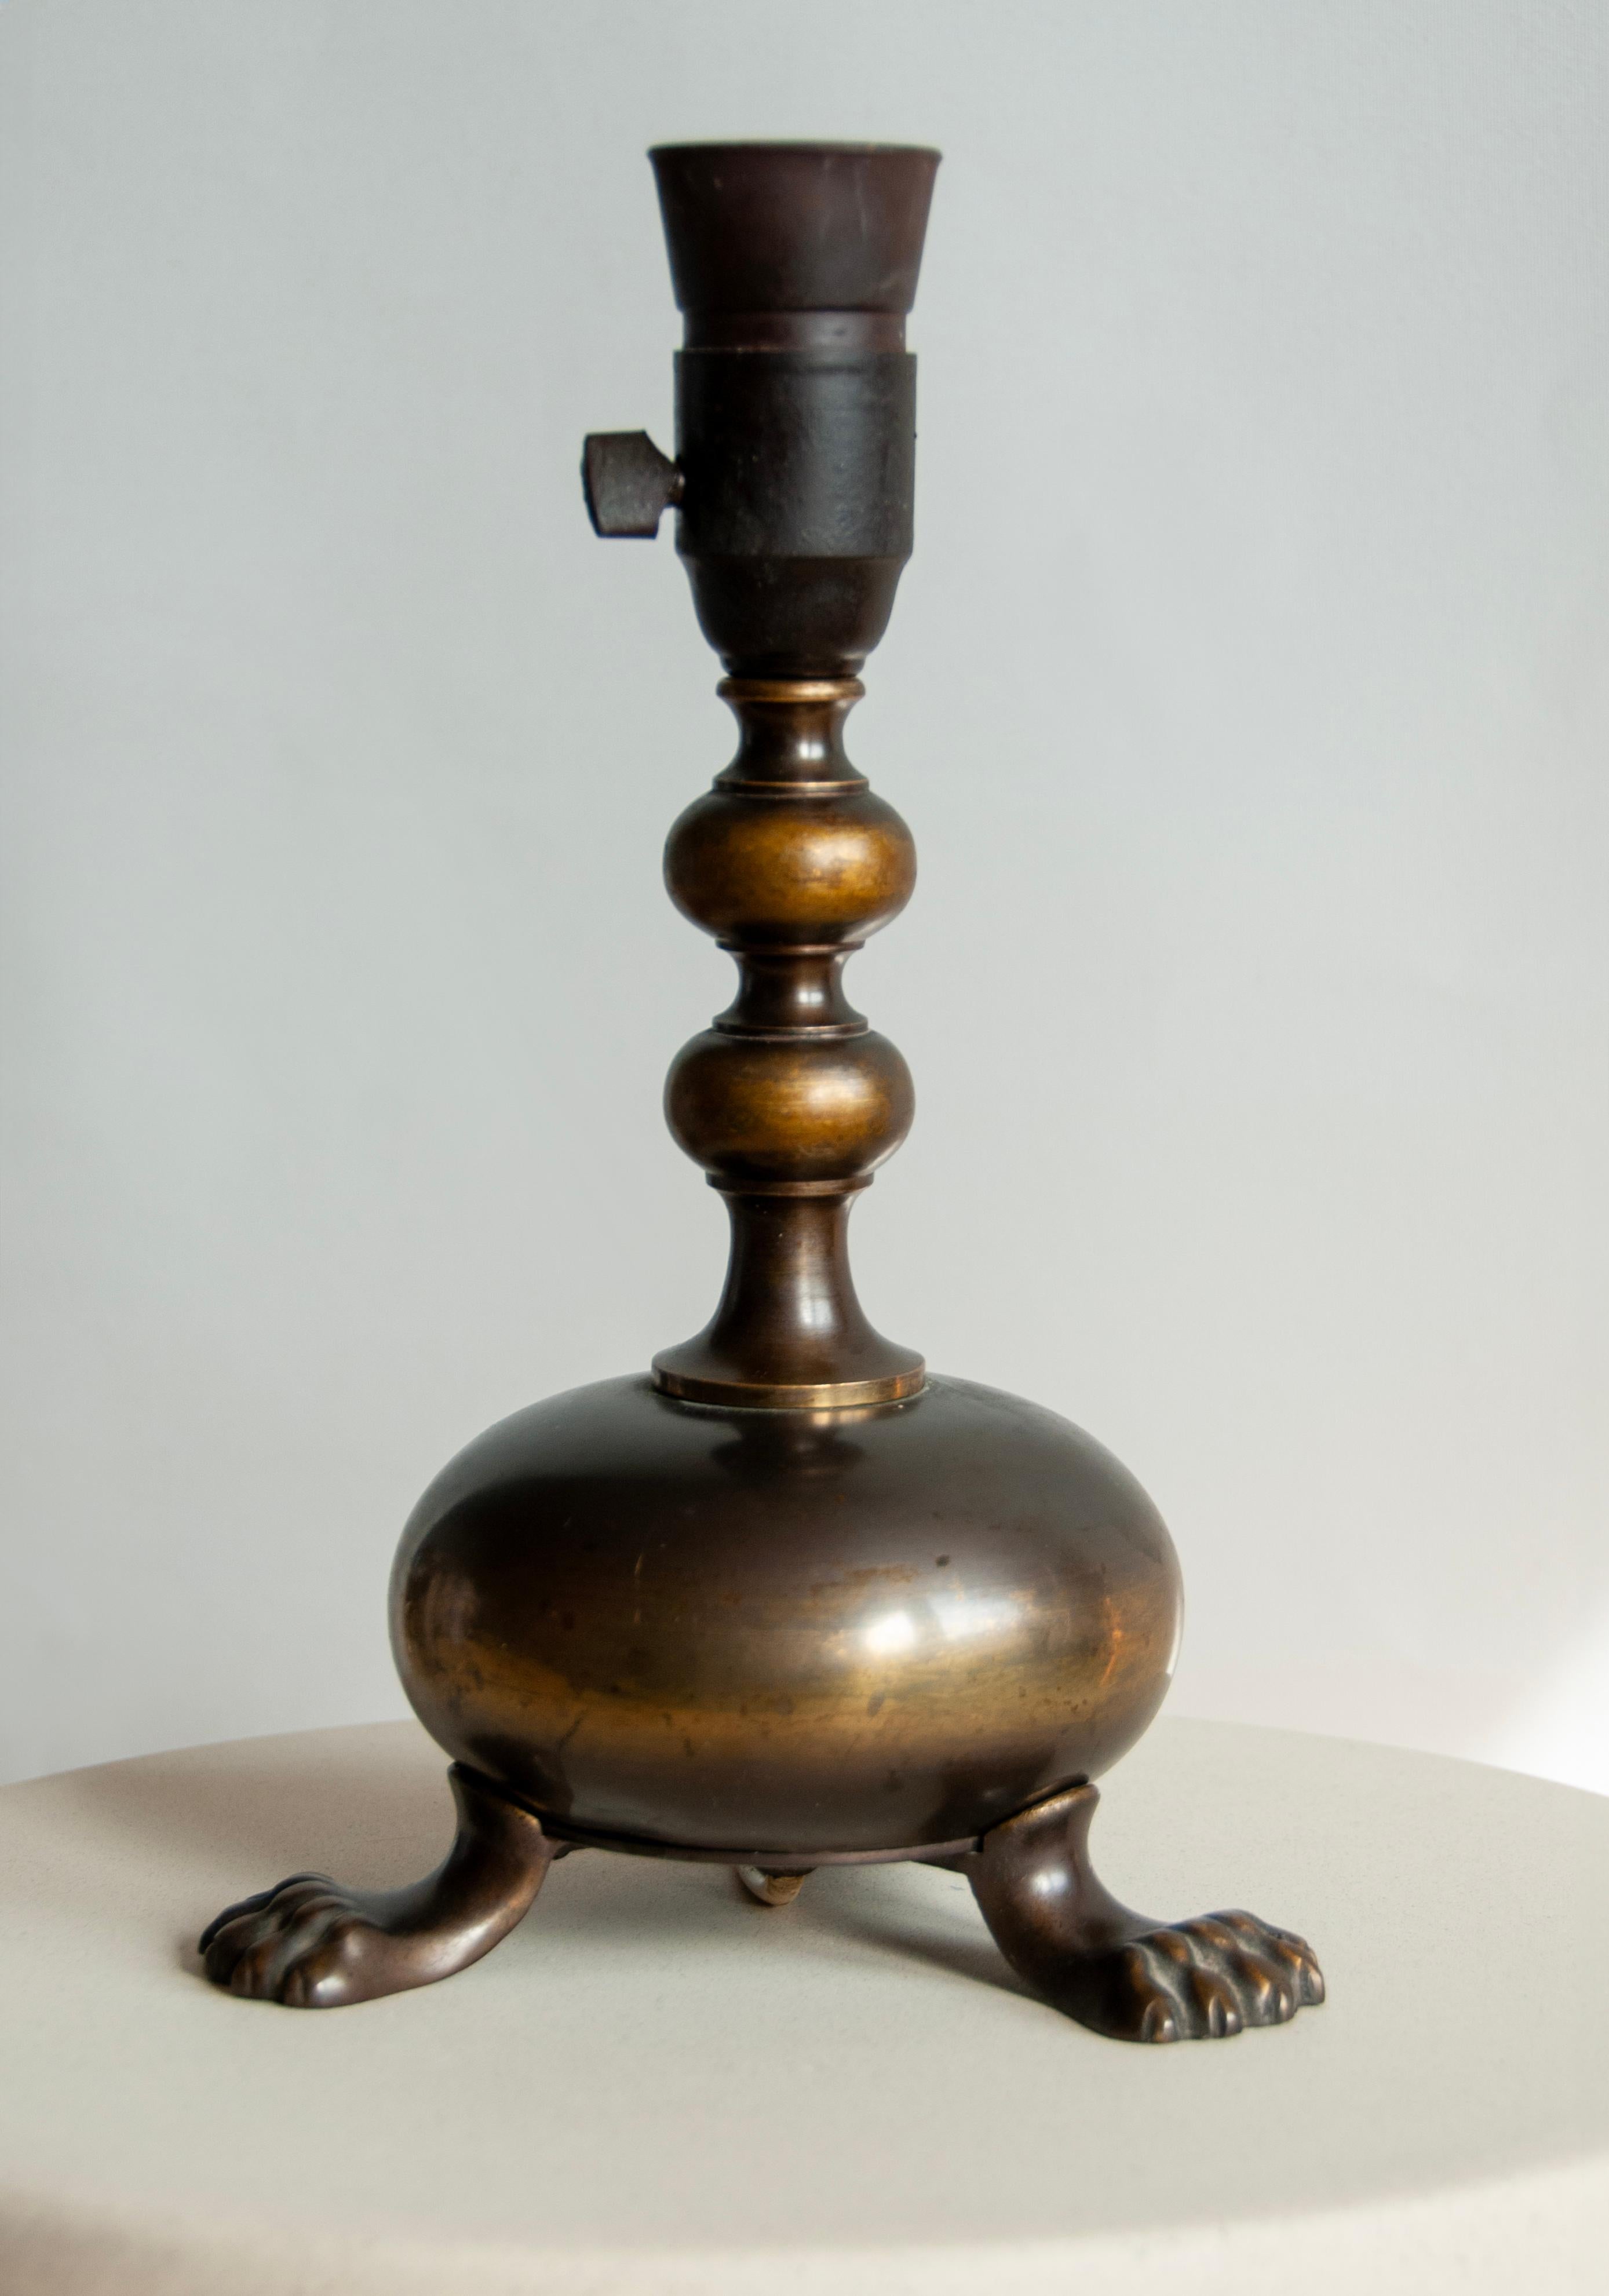 Une charmante lampe de table française avec des pieds de lion distinctifs, mettant en valeur son élégante origine française. Fabriquée dans une couleur bronze intemporelle, cette lampe dégage une allure vintage, ornée d'une usure et d'une patine